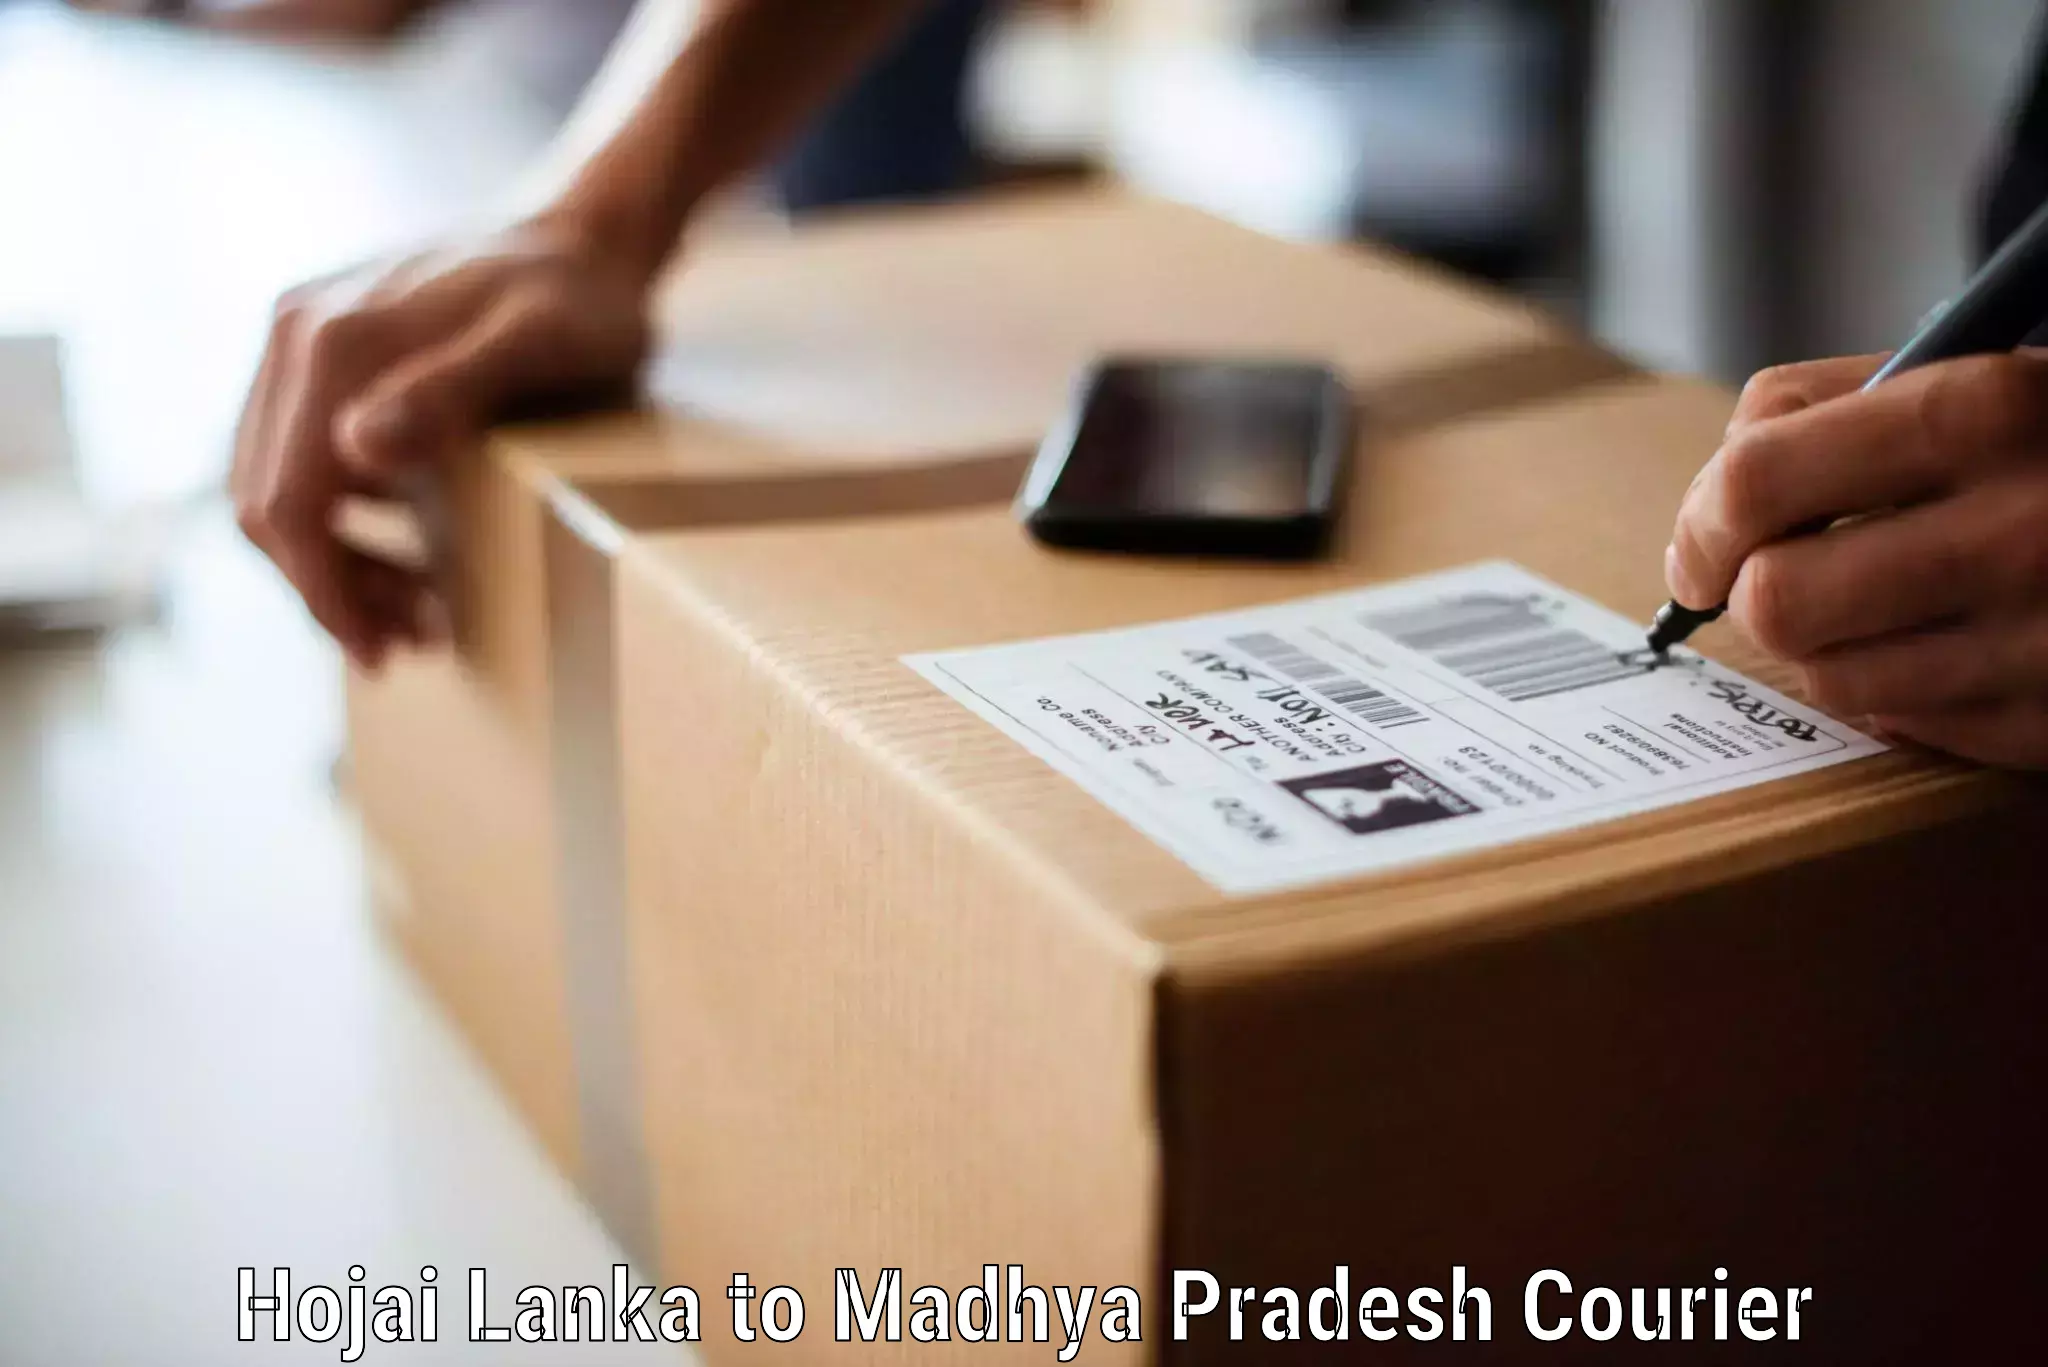 Online household goods transport in Hojai Lanka to Chandla